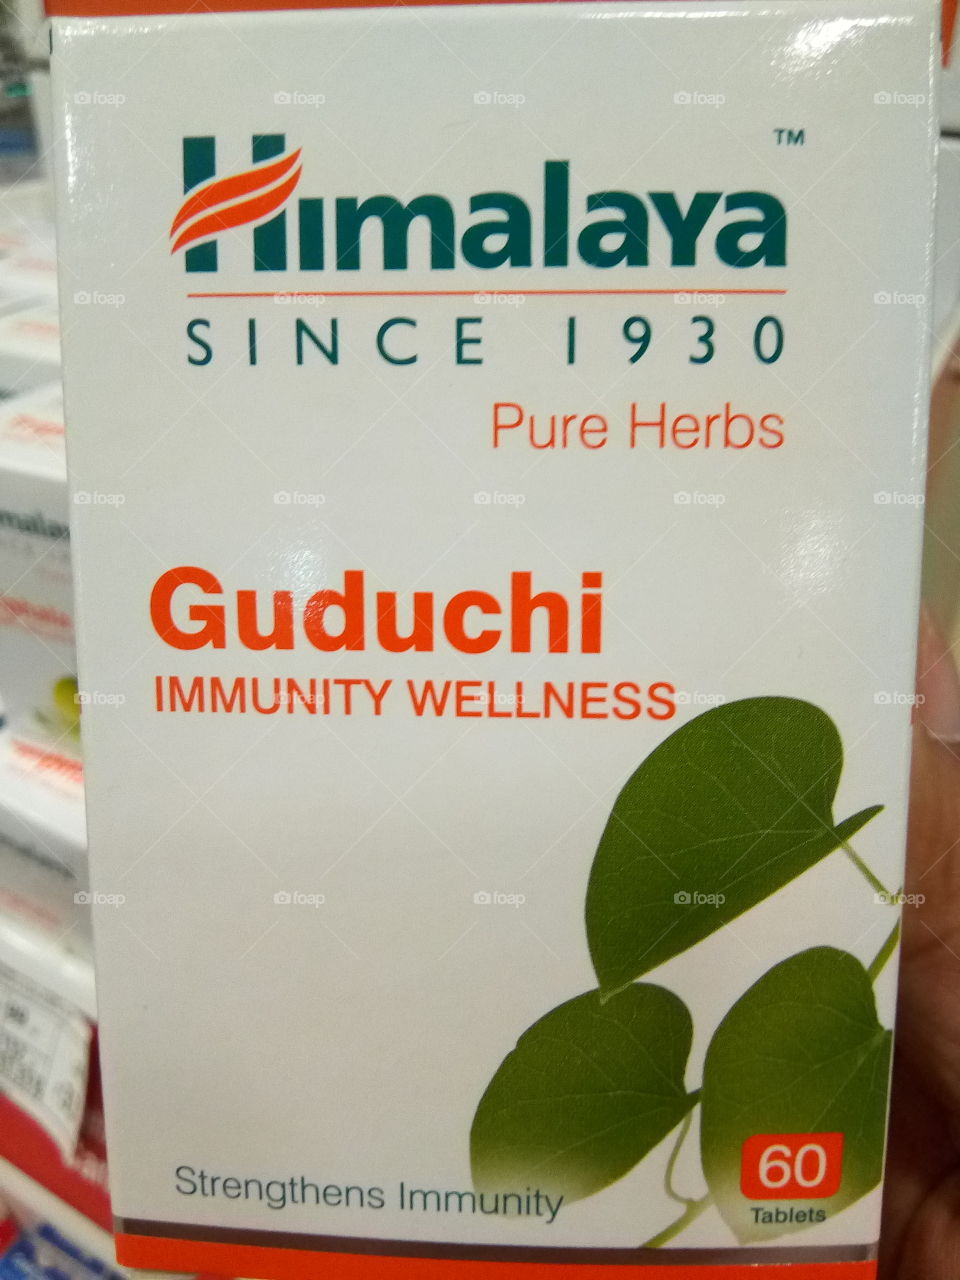 Guduchi for your immunity wellness- a medicine by Himalaya.